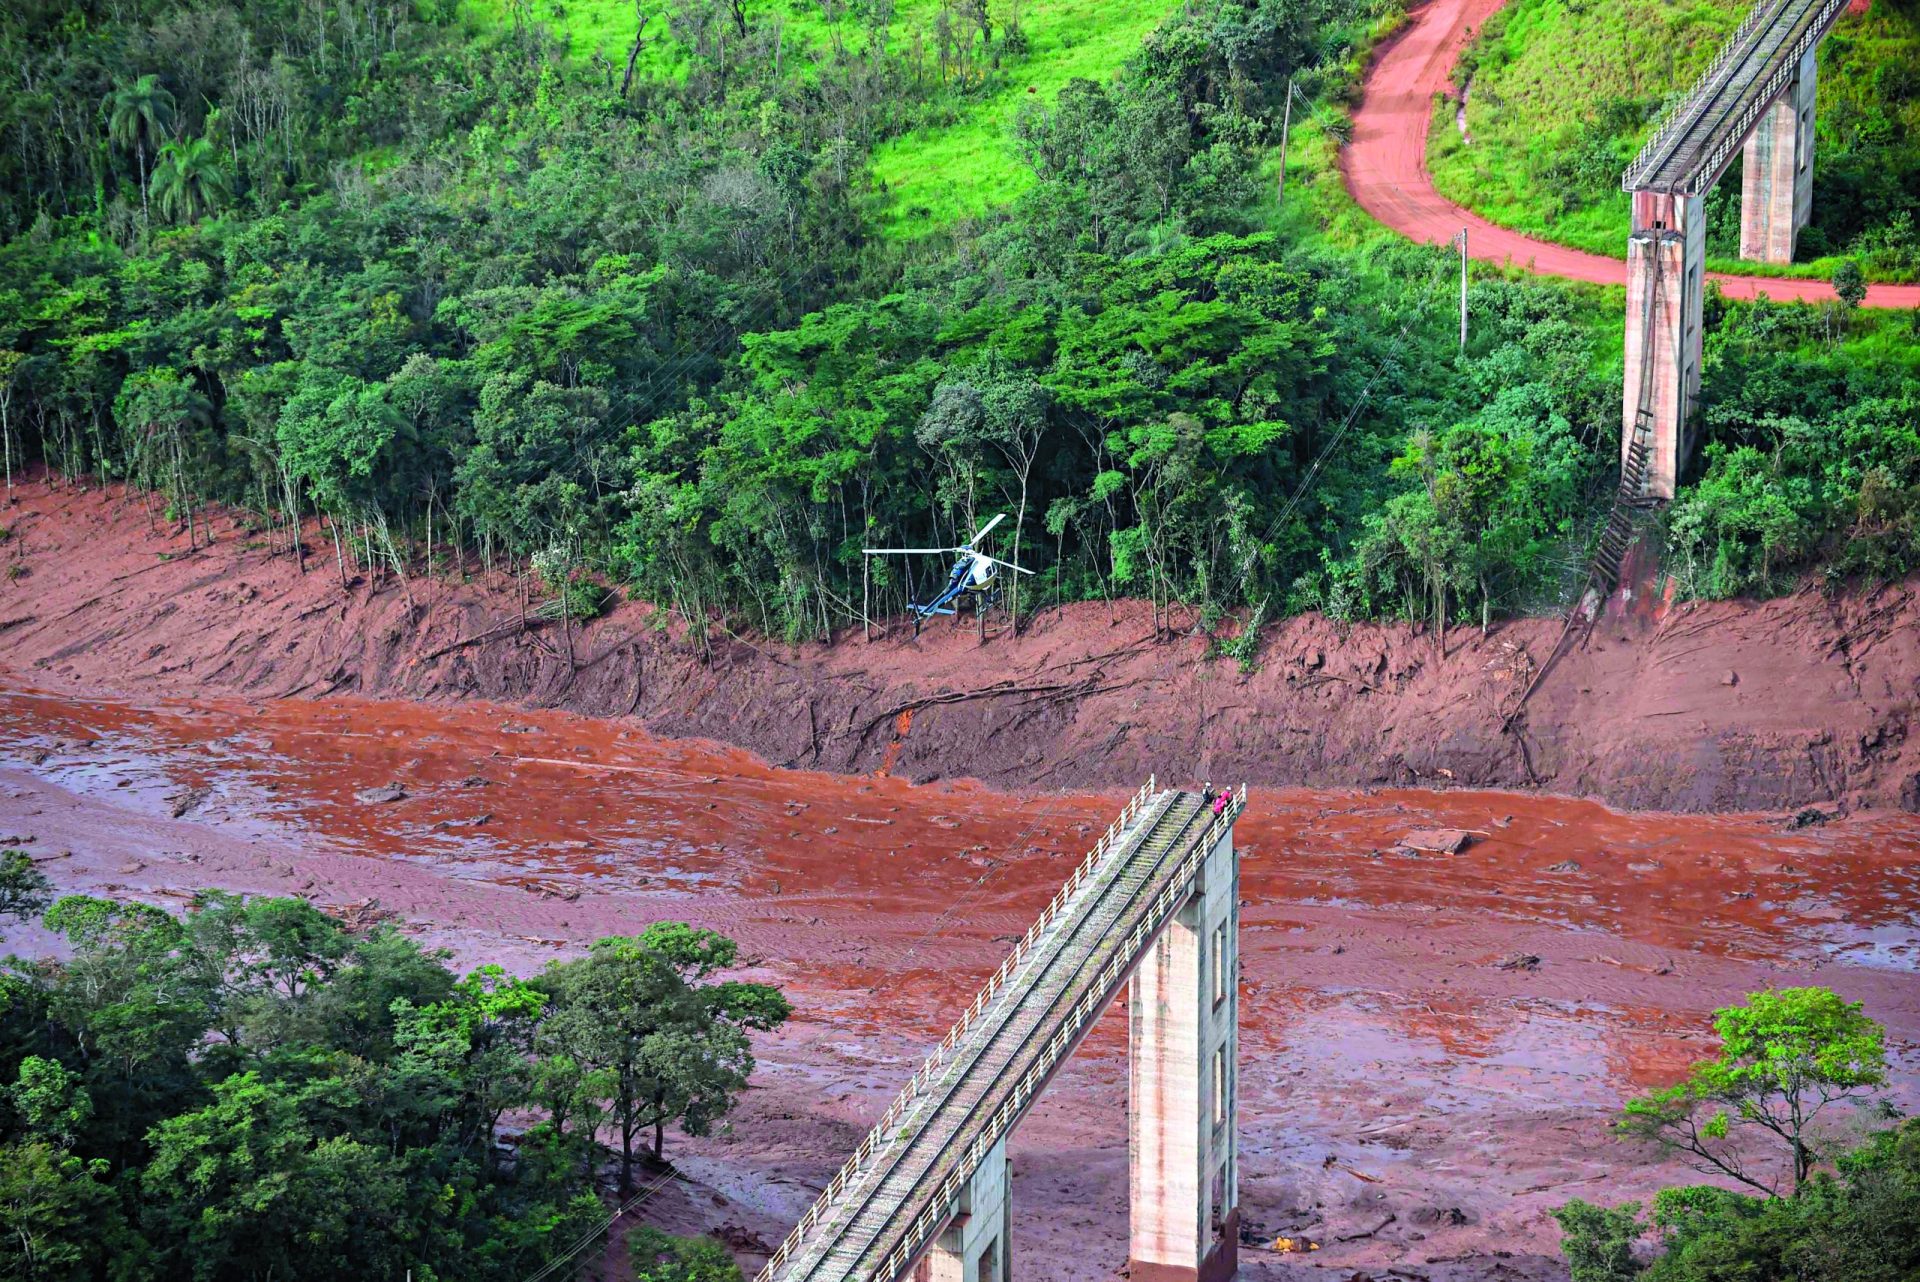 Brasil. Colapso de barragem arrasa populações | FOTOS